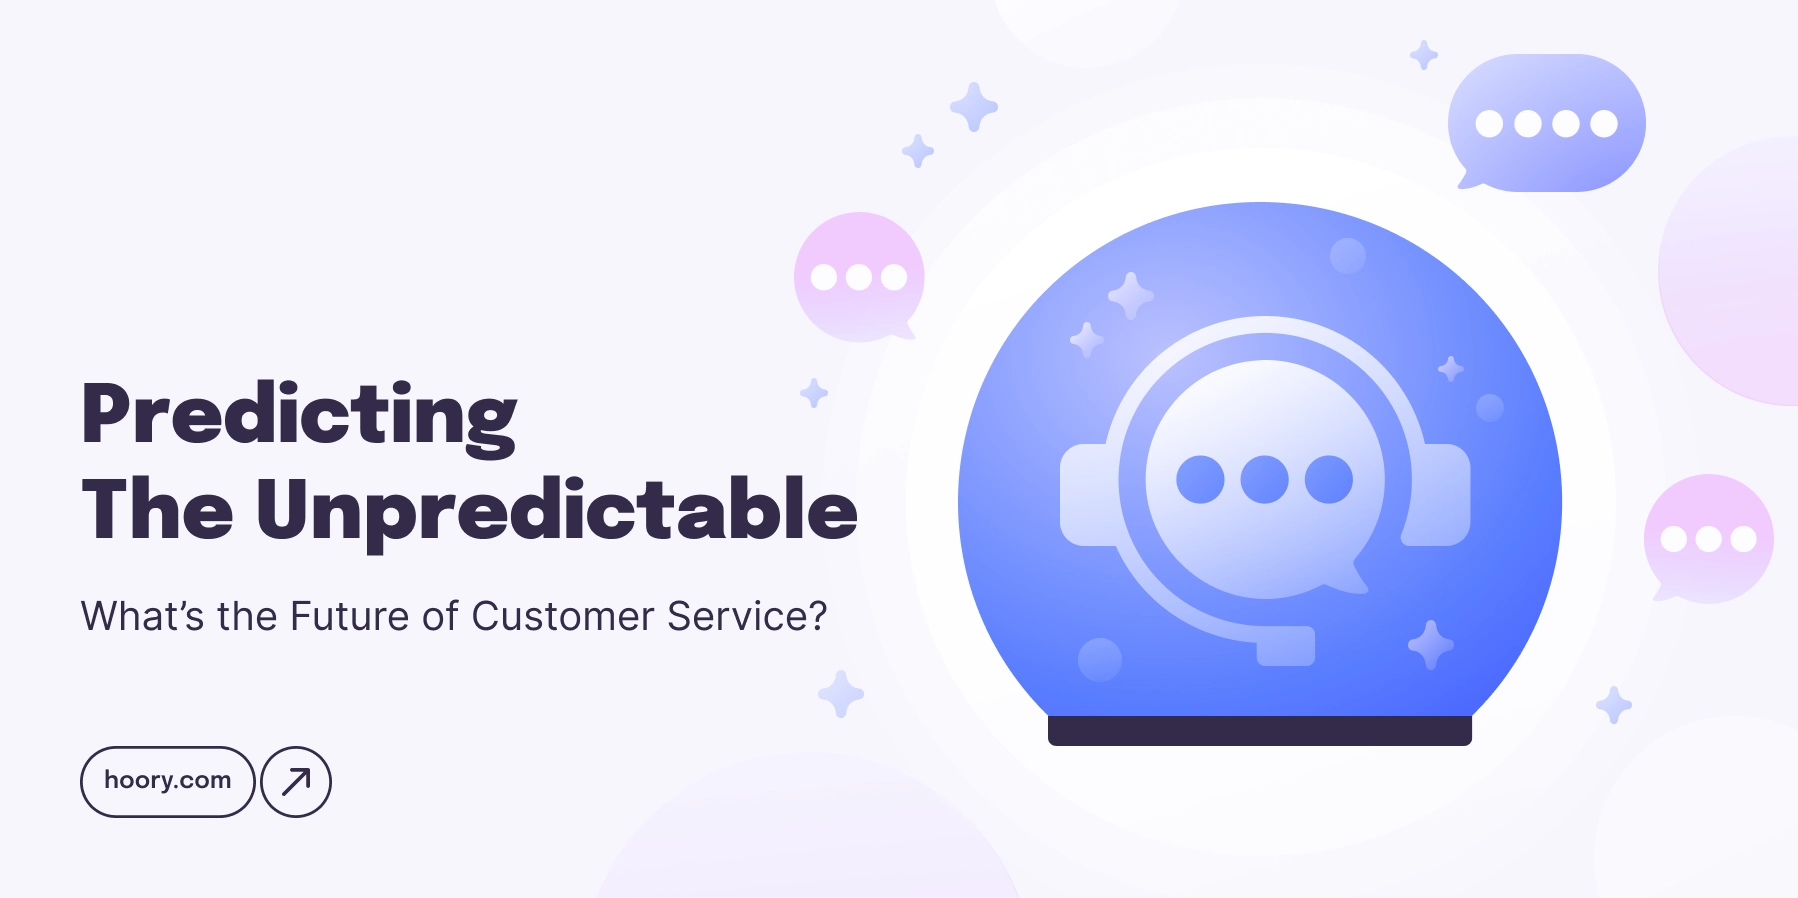 Predicting the Unpredictable. What’s the Future of Customer Service?